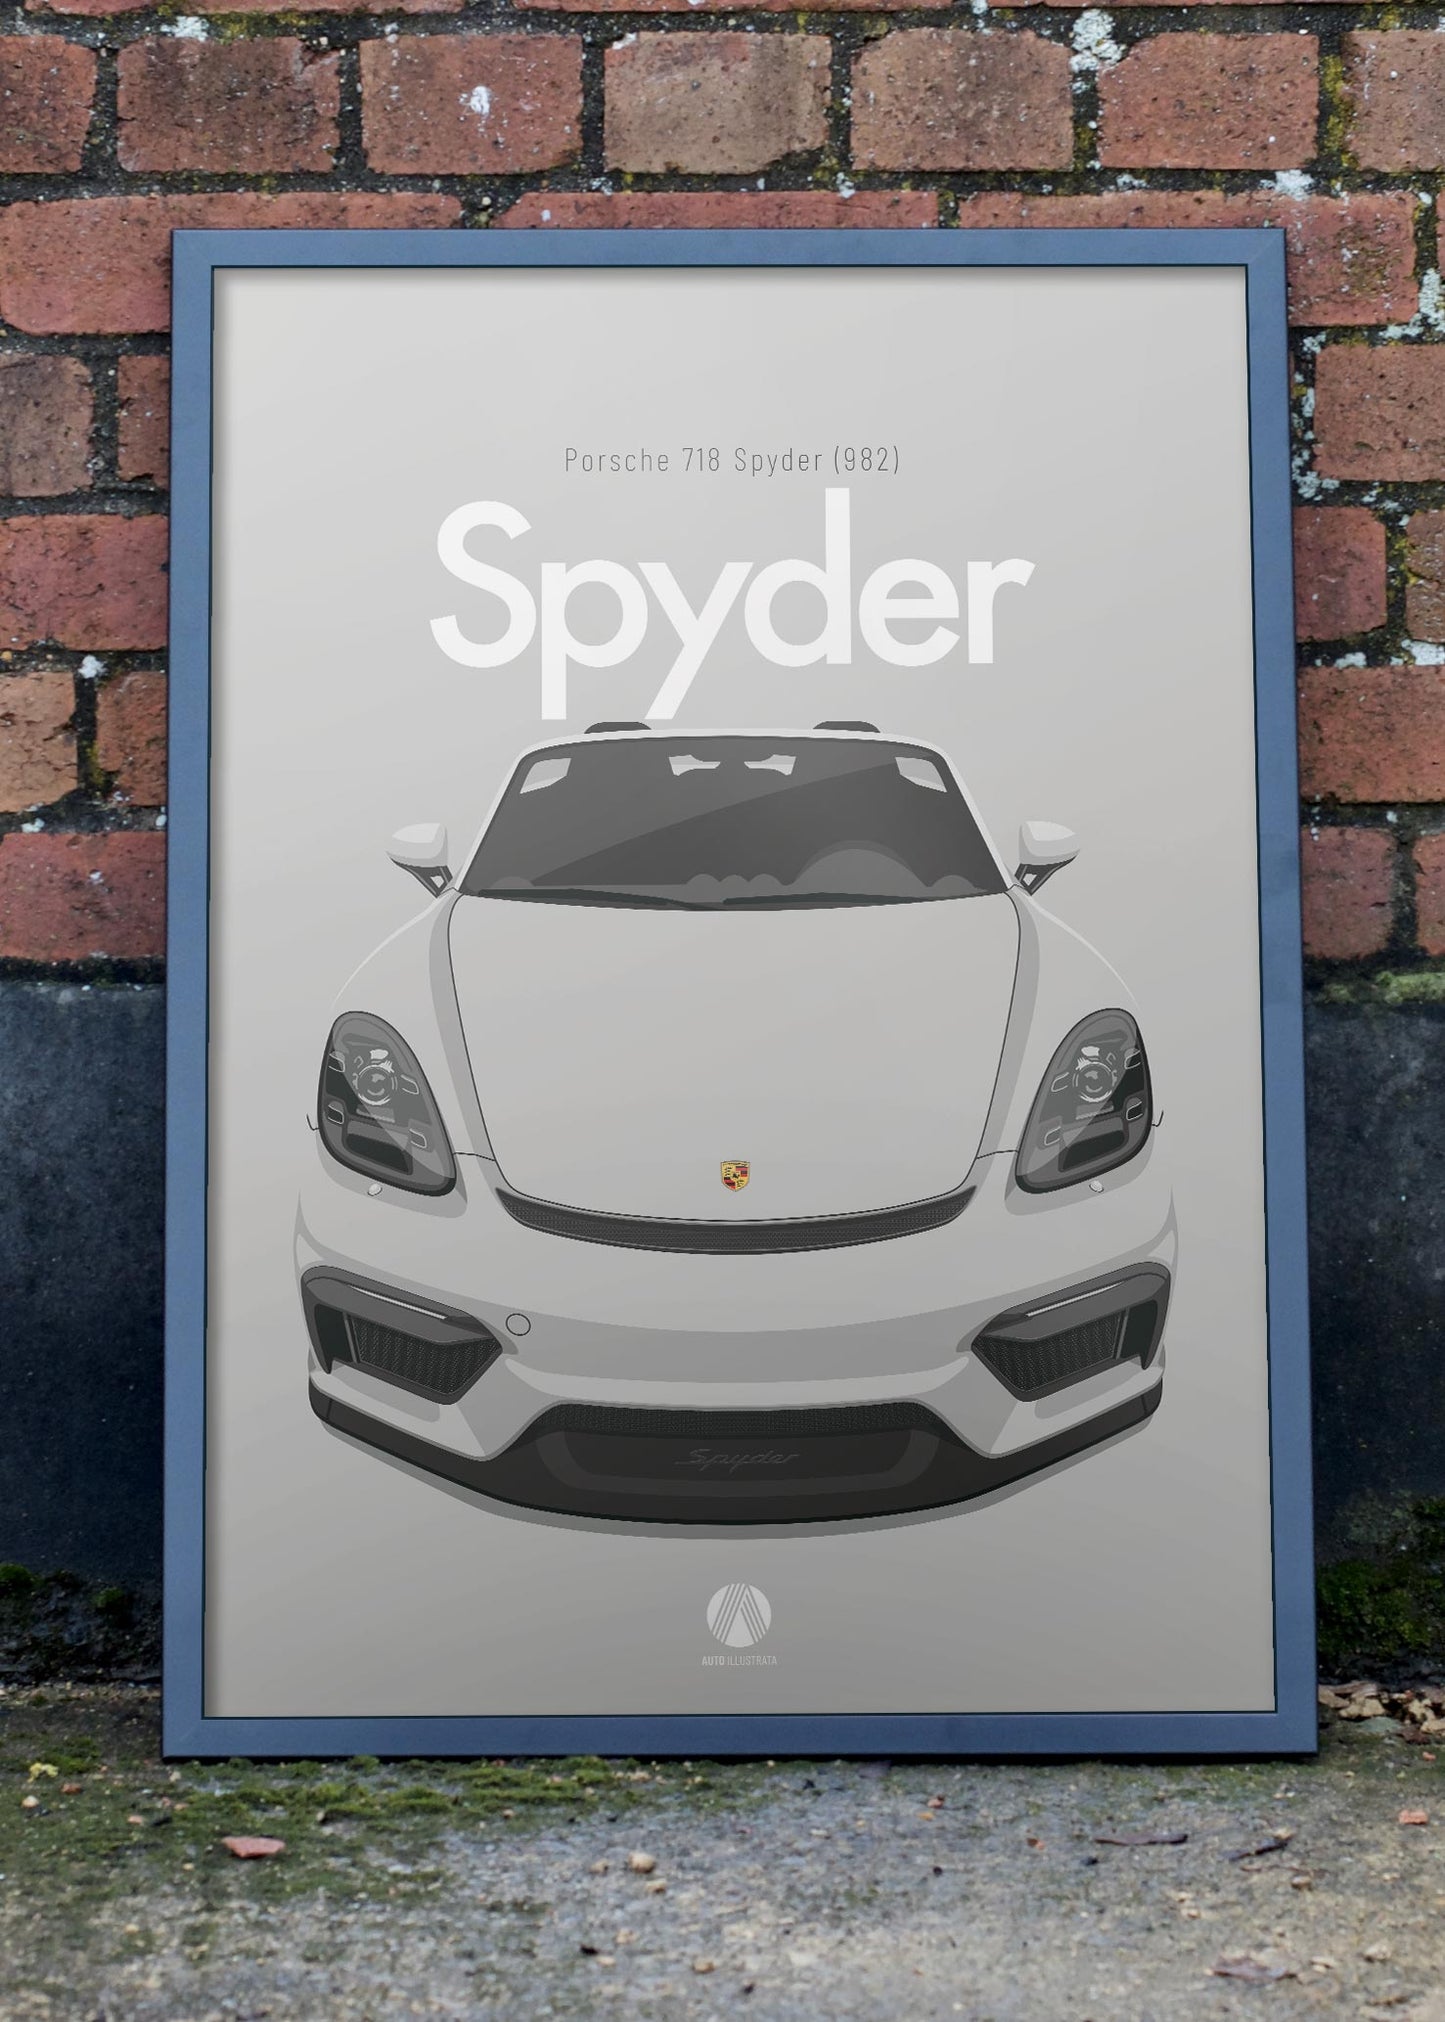 2020 Porsche 718 Spyder (982) - GT Silver - poster print